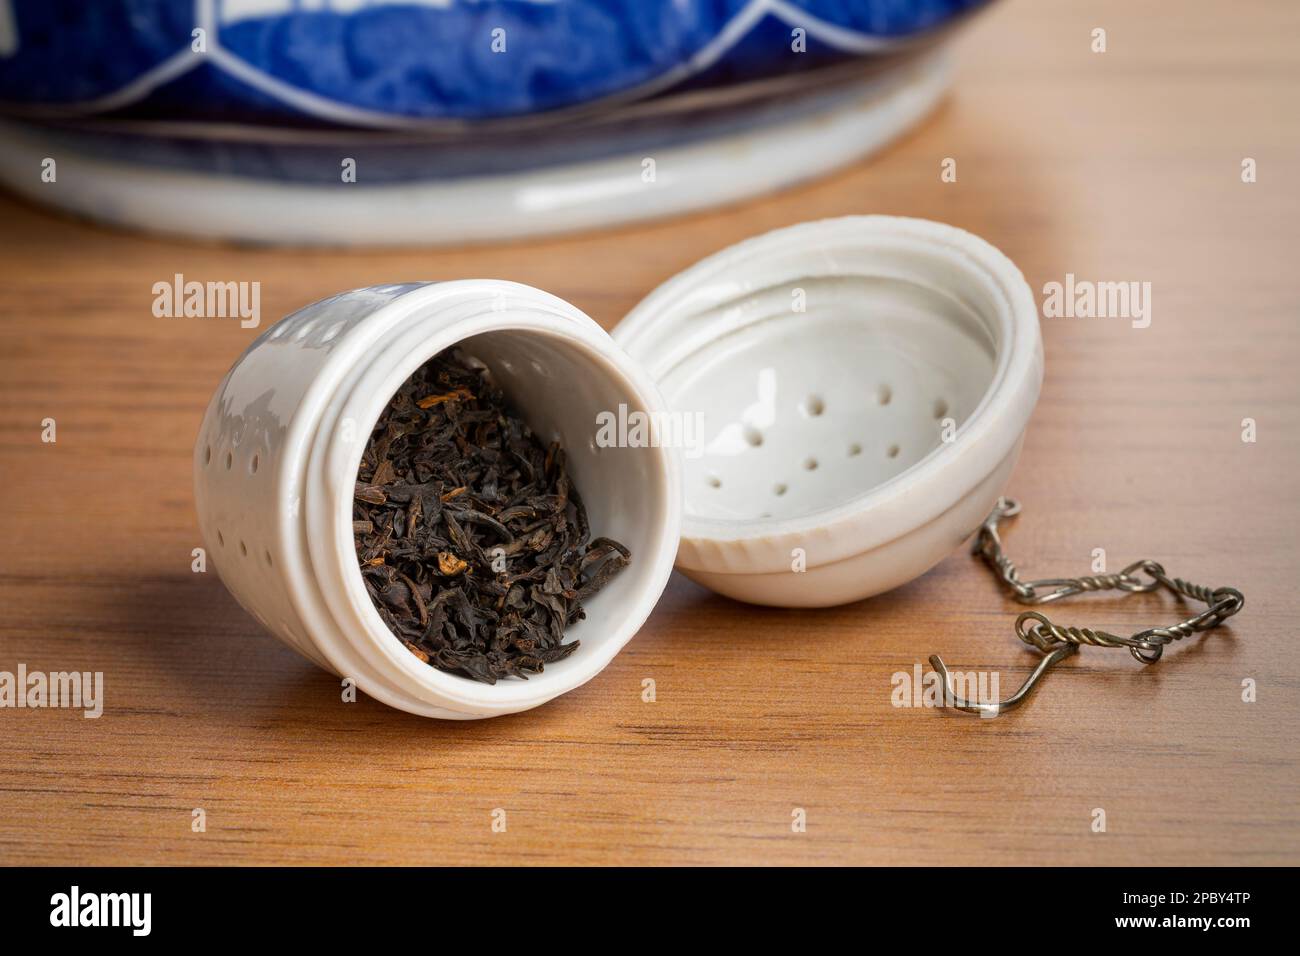 Offenes weißes Keramik-Teessieb mit getrockneten chinesischen Kee Mun-Teeblättern aus nächster Nähe, um mit der Teezubereitung zu beginnen Stockfoto